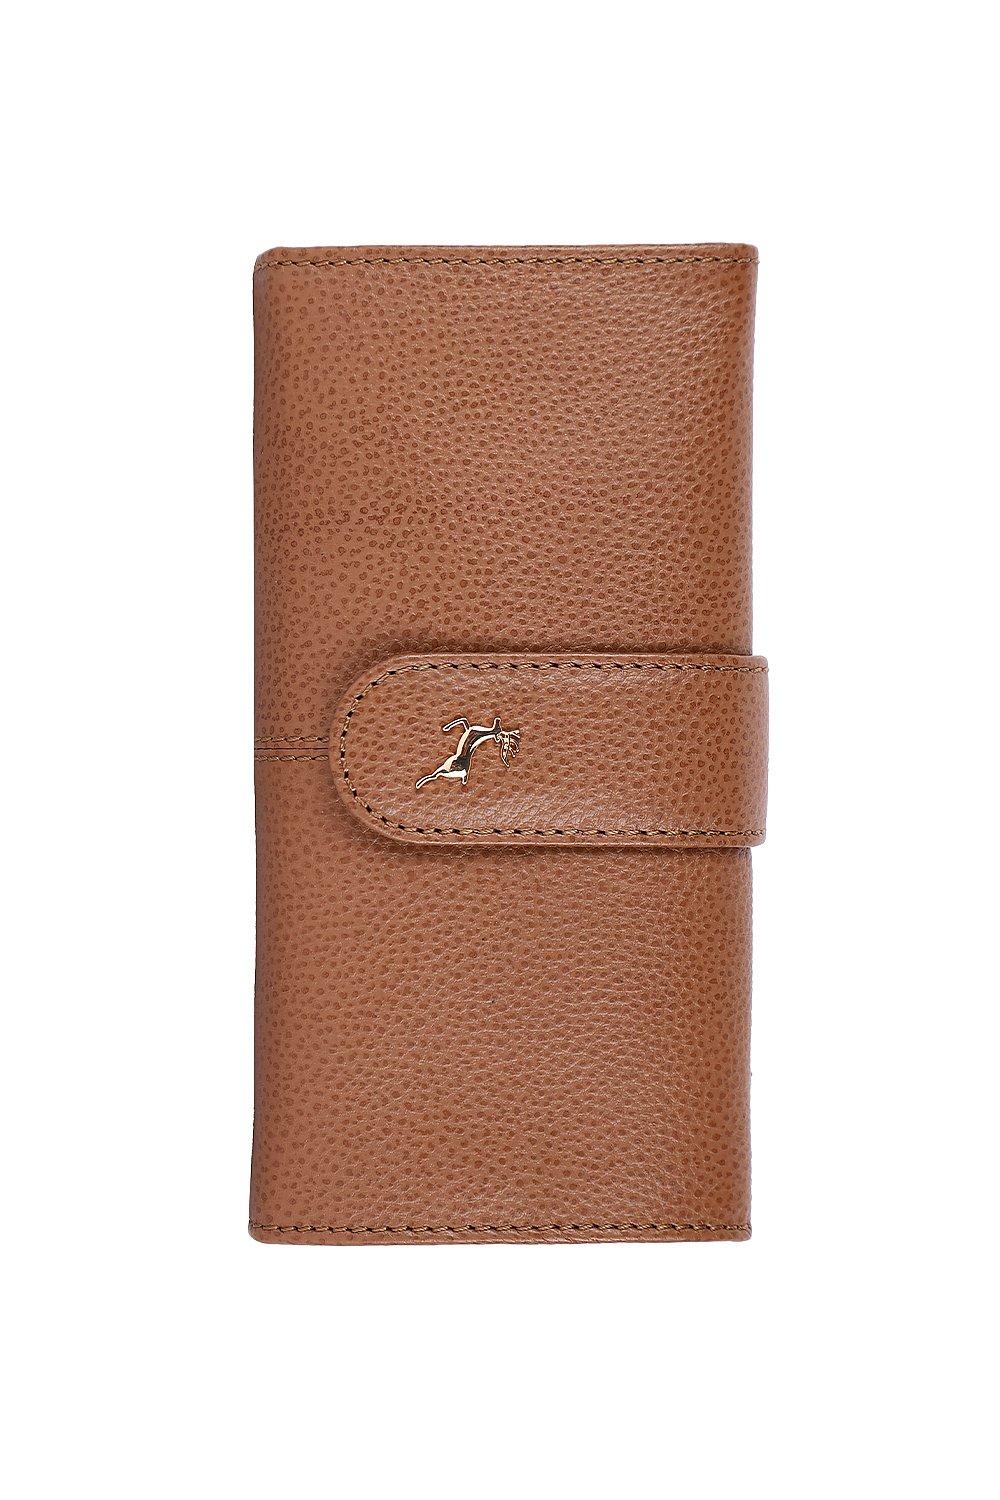 Большой кошелек Sherry из натуральной кожи с защитой RFID на 14 карт Ashwood Leather, коричневый